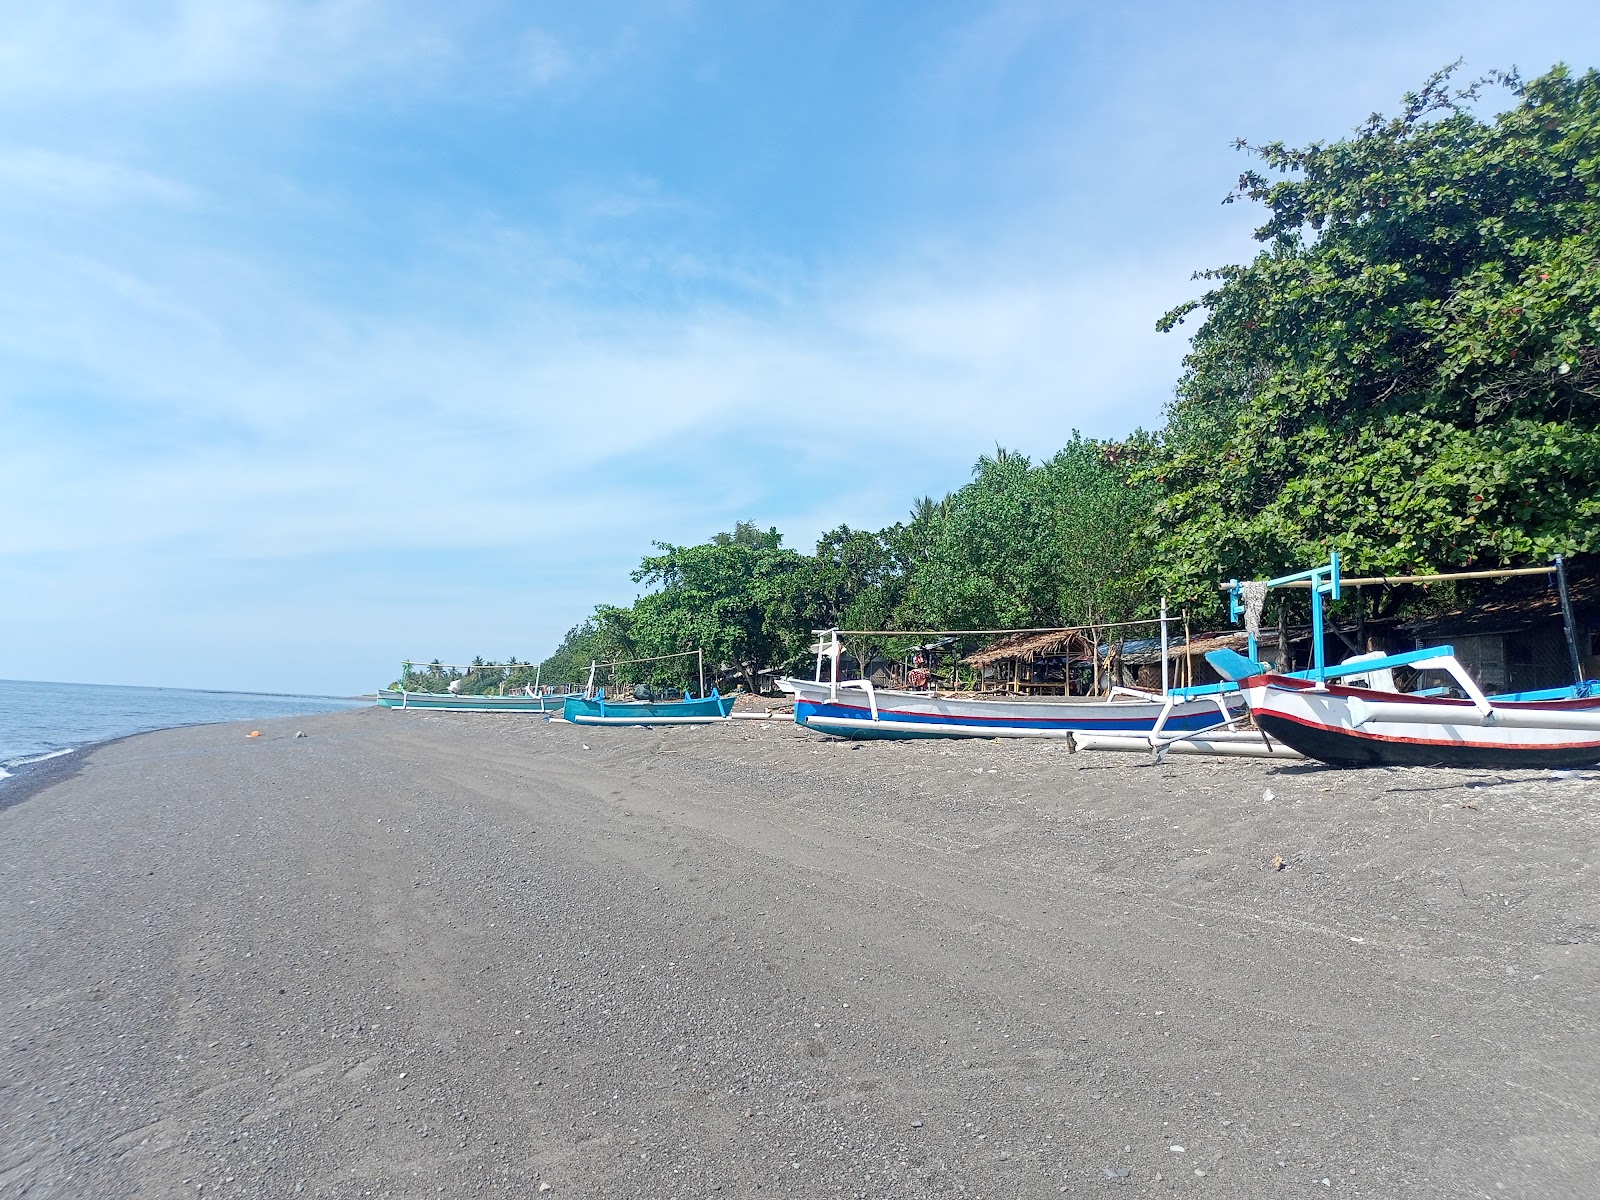 Fotografie cu Ketapang Tampes beach cu o suprafață de apa turcoaz